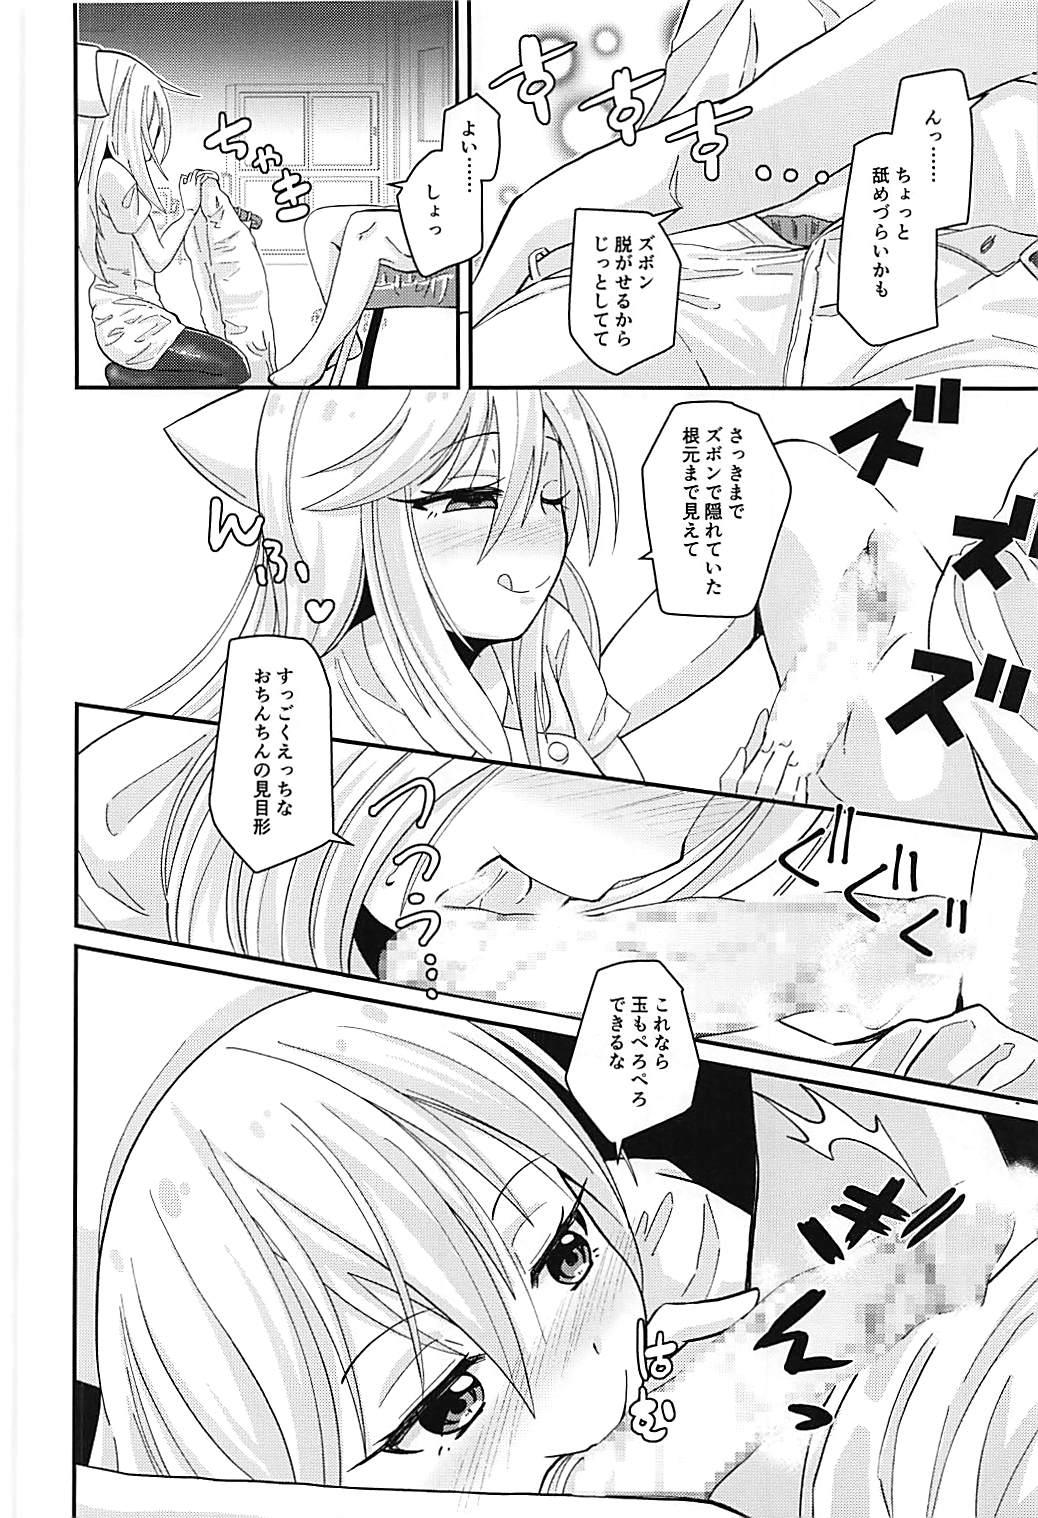 Humiliation Pov Nurse Kikuzuki "ni" Namerare nagara - Kantai collection Whipping - Page 5